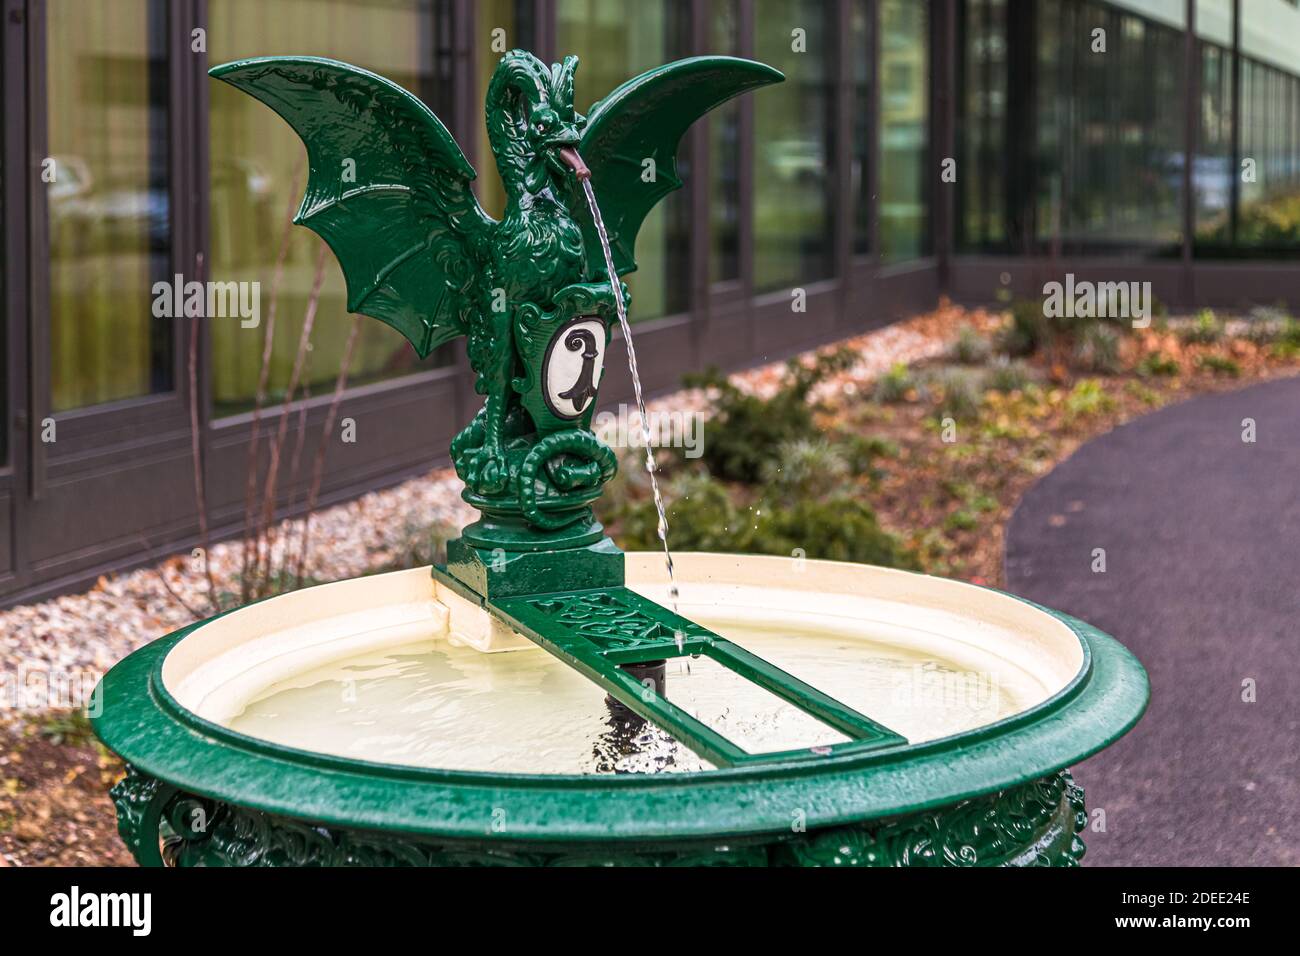 Basilisk Trinkwasserbrunnen in Basel, Schweiz. Die Figur auf dem Basler Basilisken-Trinkbrunnen spielt auch eine Rolle in der Harry-Potter-Geschichte in der Kammer des Schreckens Stockfoto